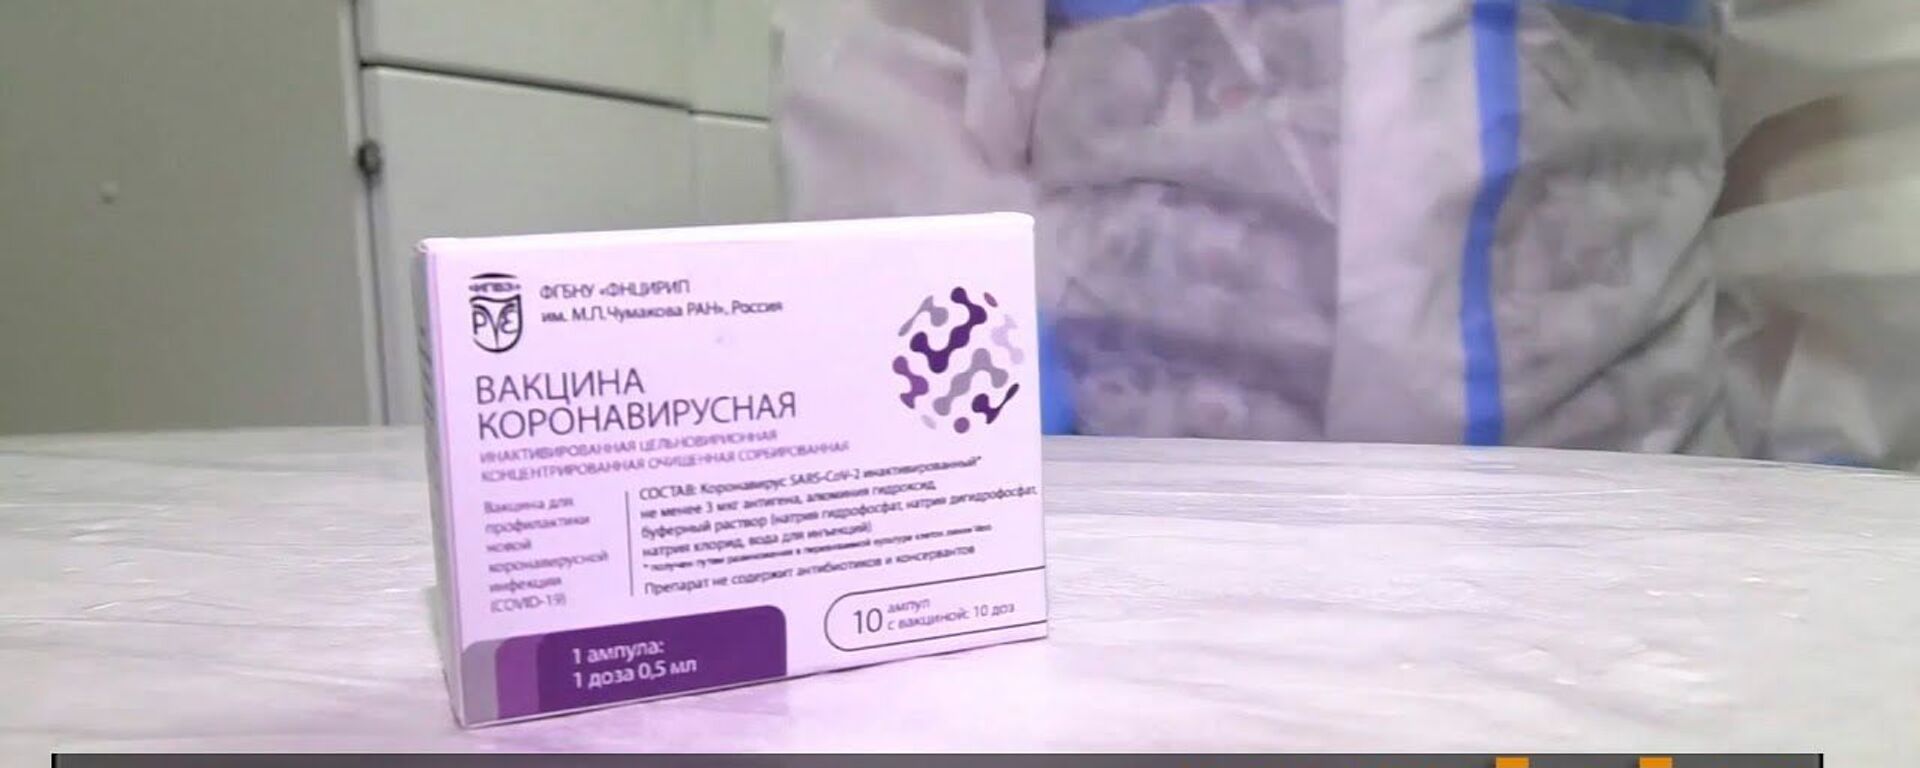 Trīskāršs trieciens pandēmijai: Krievijā sāk testēt trešo vakcīnu pret koronavīrusu - Sputnik Latvija, 1920, 21.10.2020